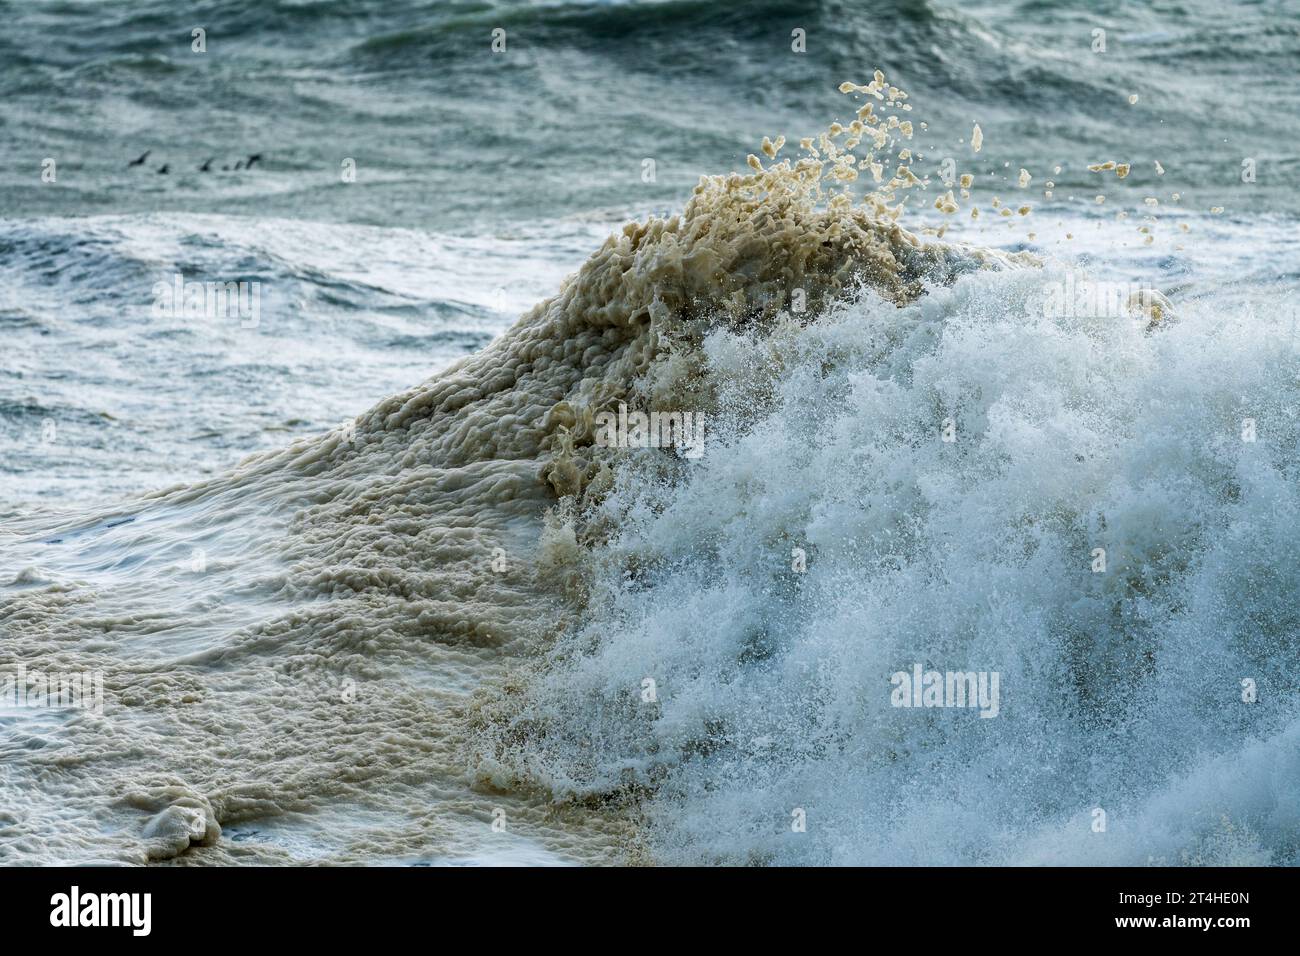 sfondo naturale astratto di un'onda oceanica che si schianta contro la schiuma marina o lo spume durante una tempesta invernale sul mare turbolento Foto Stock